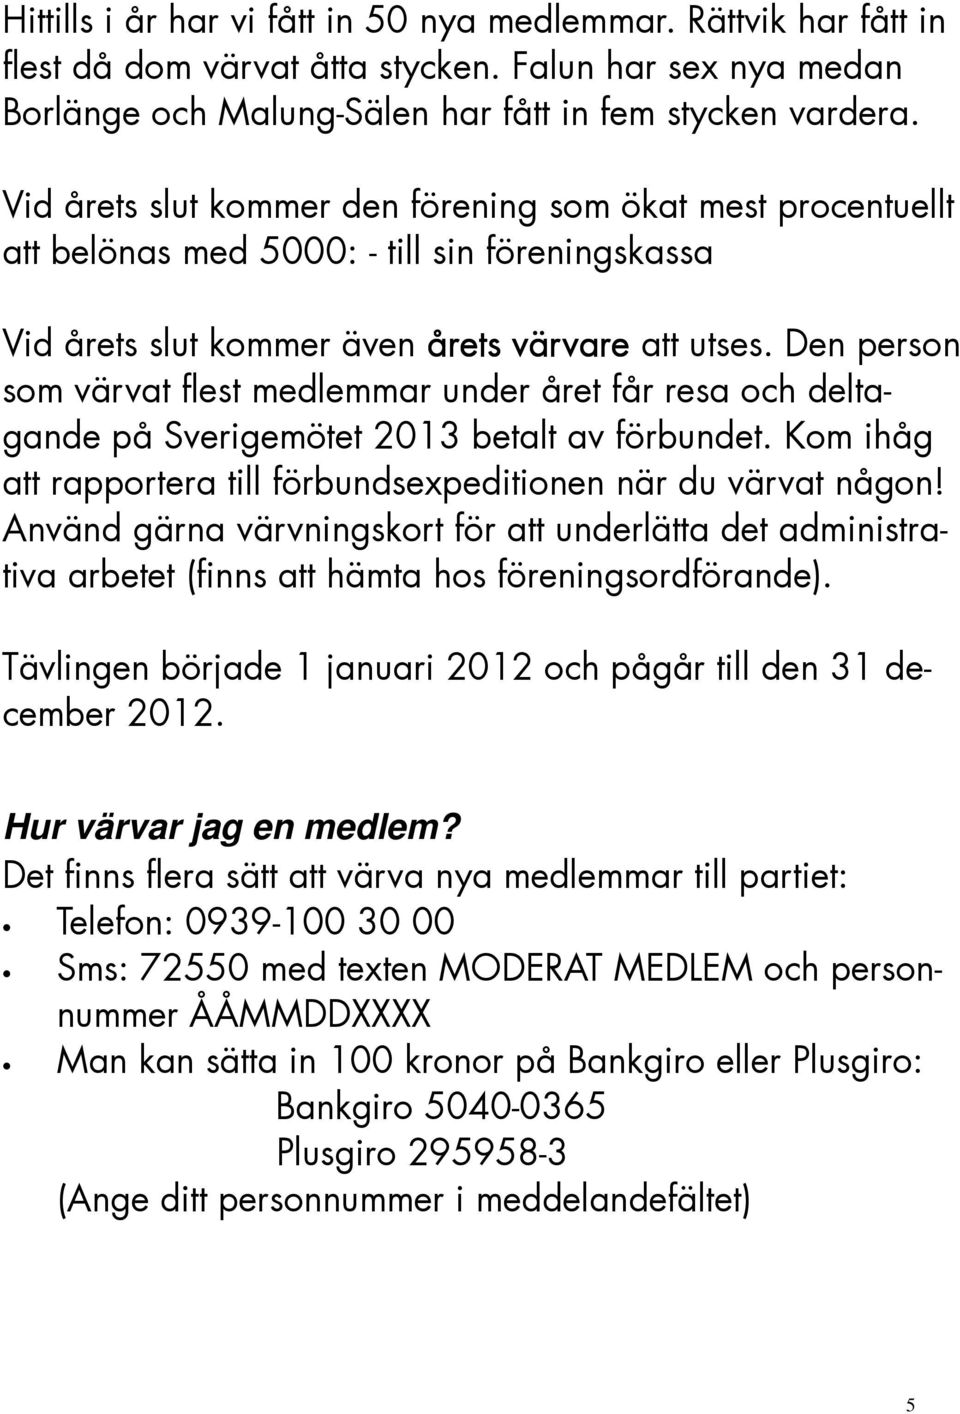 Den person som värvat flest medlemmar under året får resa och deltagande på Sverigemötet 2013 betalt av förbundet. Kom ihåg att rapportera till förbundsexpeditionen när du värvat någon!